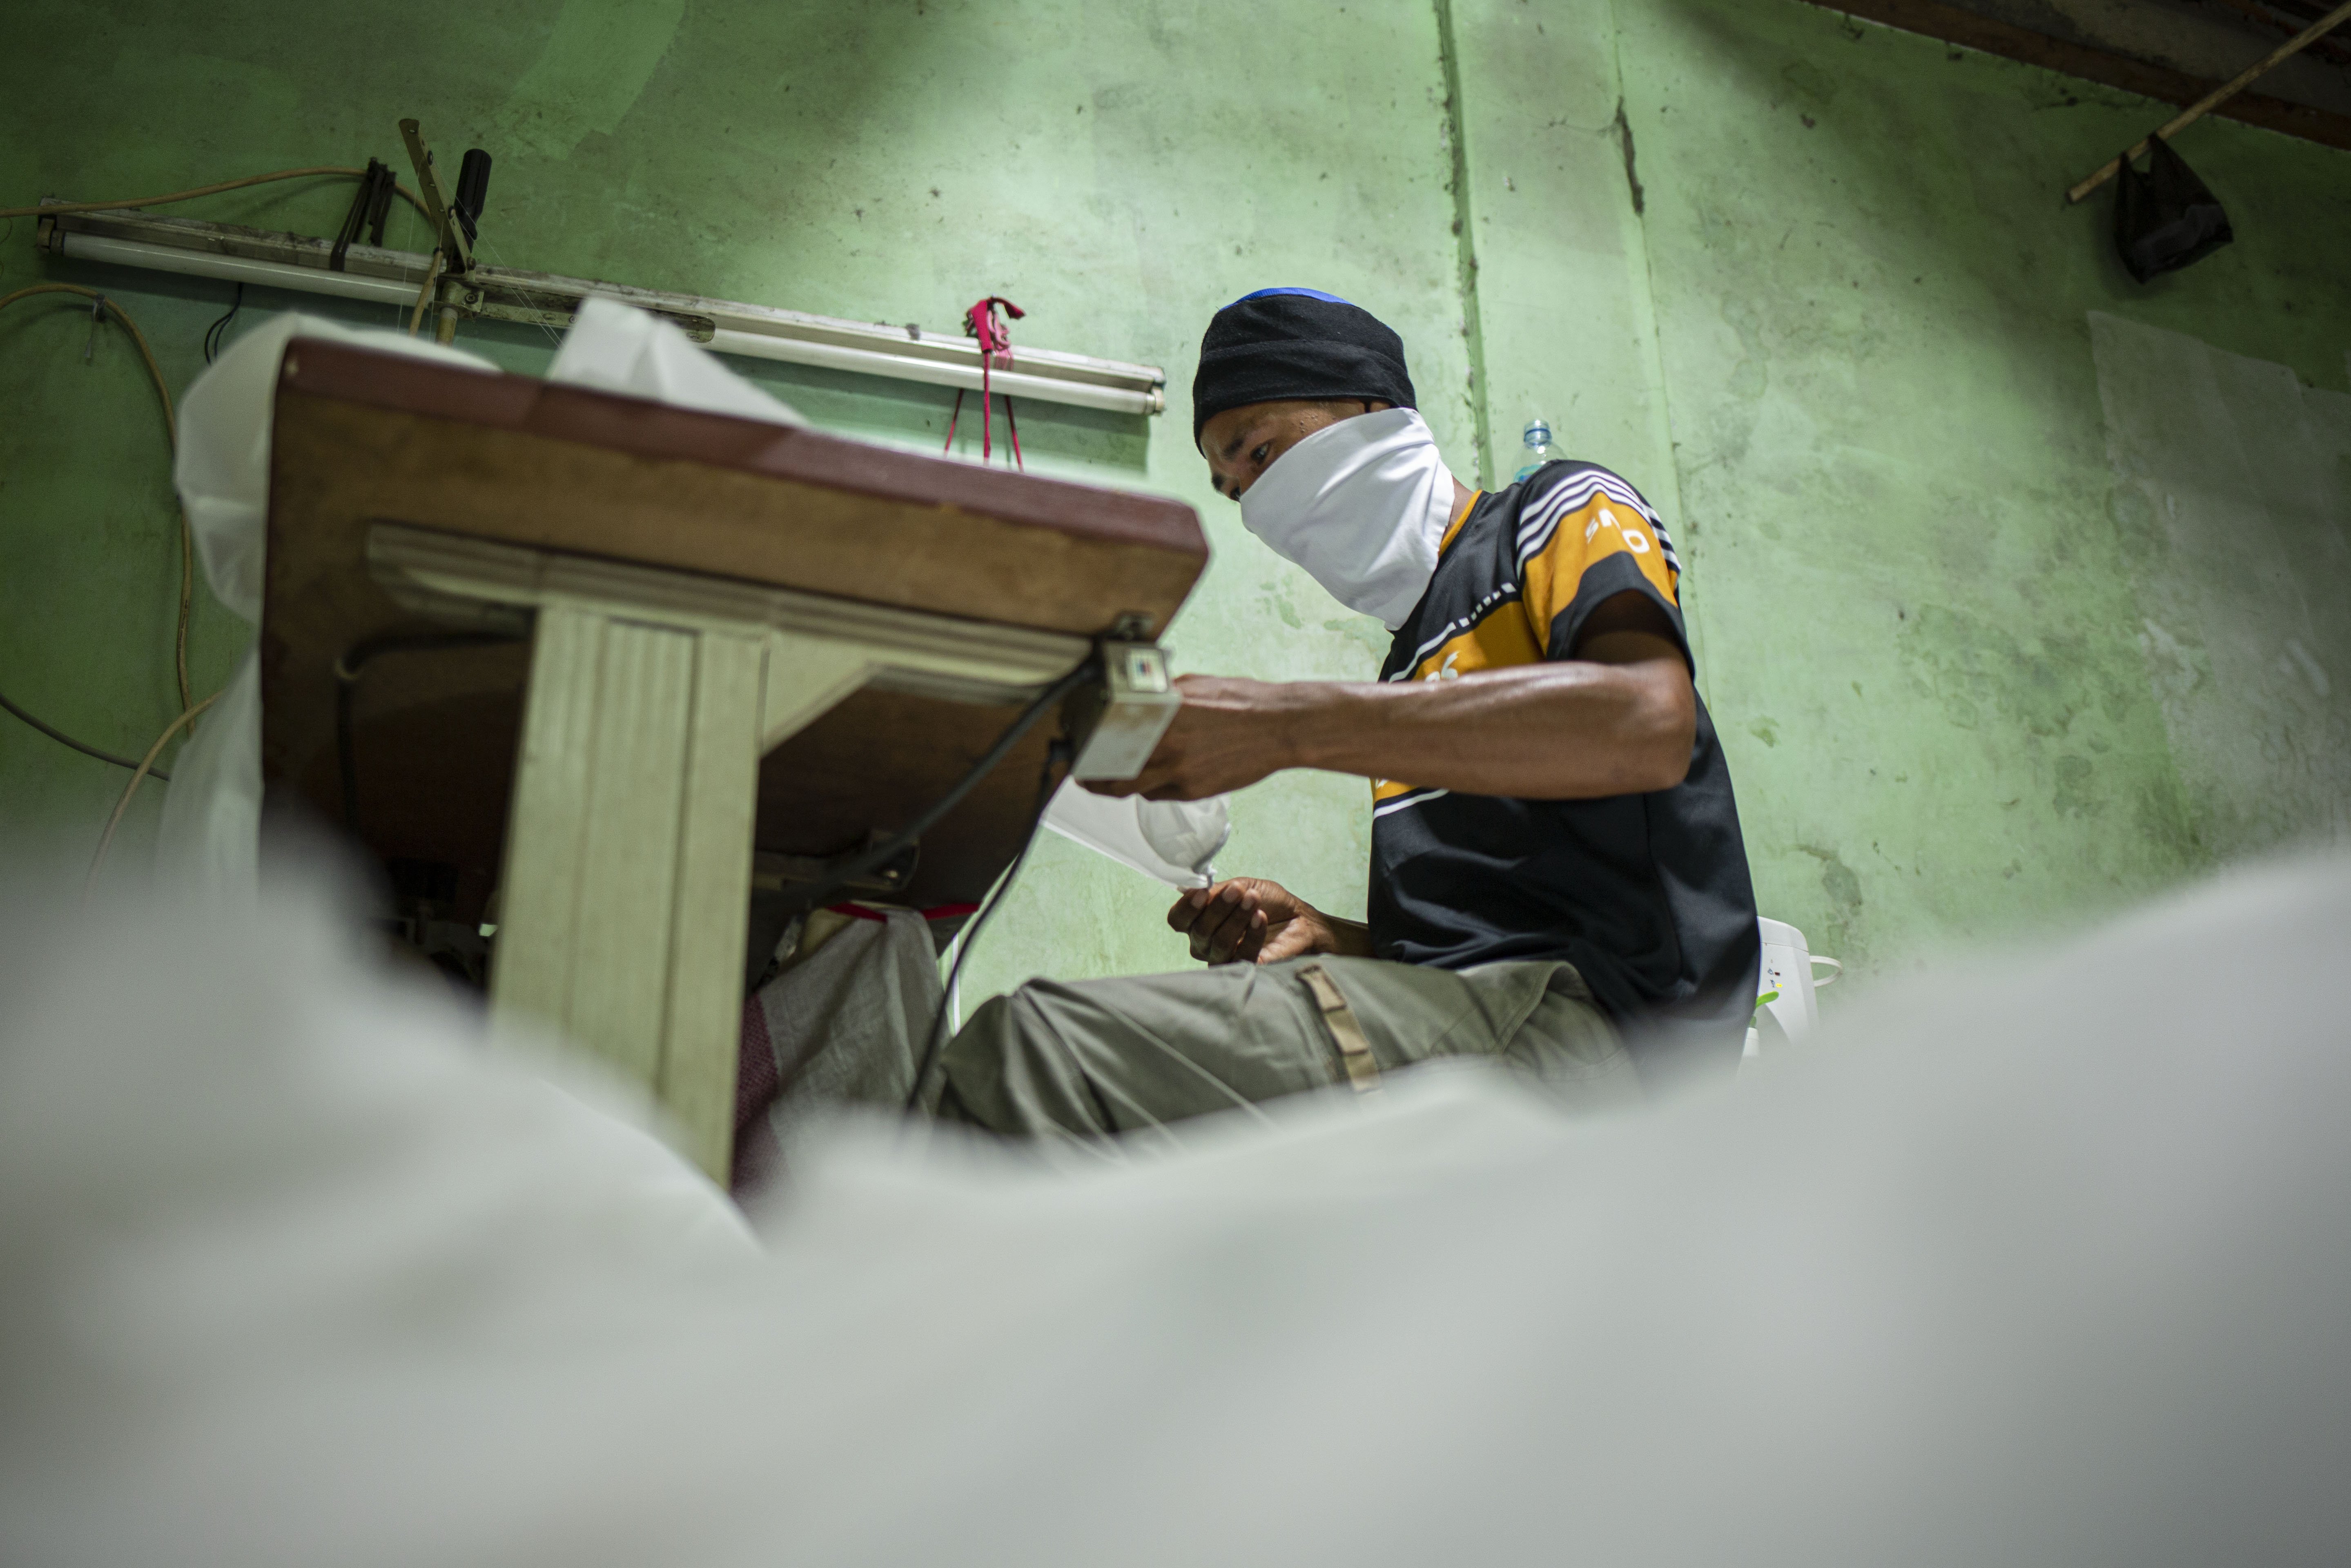 Pekerja menggunakan pakaian Alat Pelindung Diri (APD) tenaga medis di Pusat Industri Kecil, Penggilingan, Jakarta Timur, Rabu (24/3). Lonjakan jumlah kasus penyebaran virus corona (COVID-19) di beberapa wilayah menyebabkan terbatasnya ketersediaan alat perlindungan diri (APD). Pakaian untuk alat perlindungan diri tersebut dijual dengan harga Rp. 100.000.